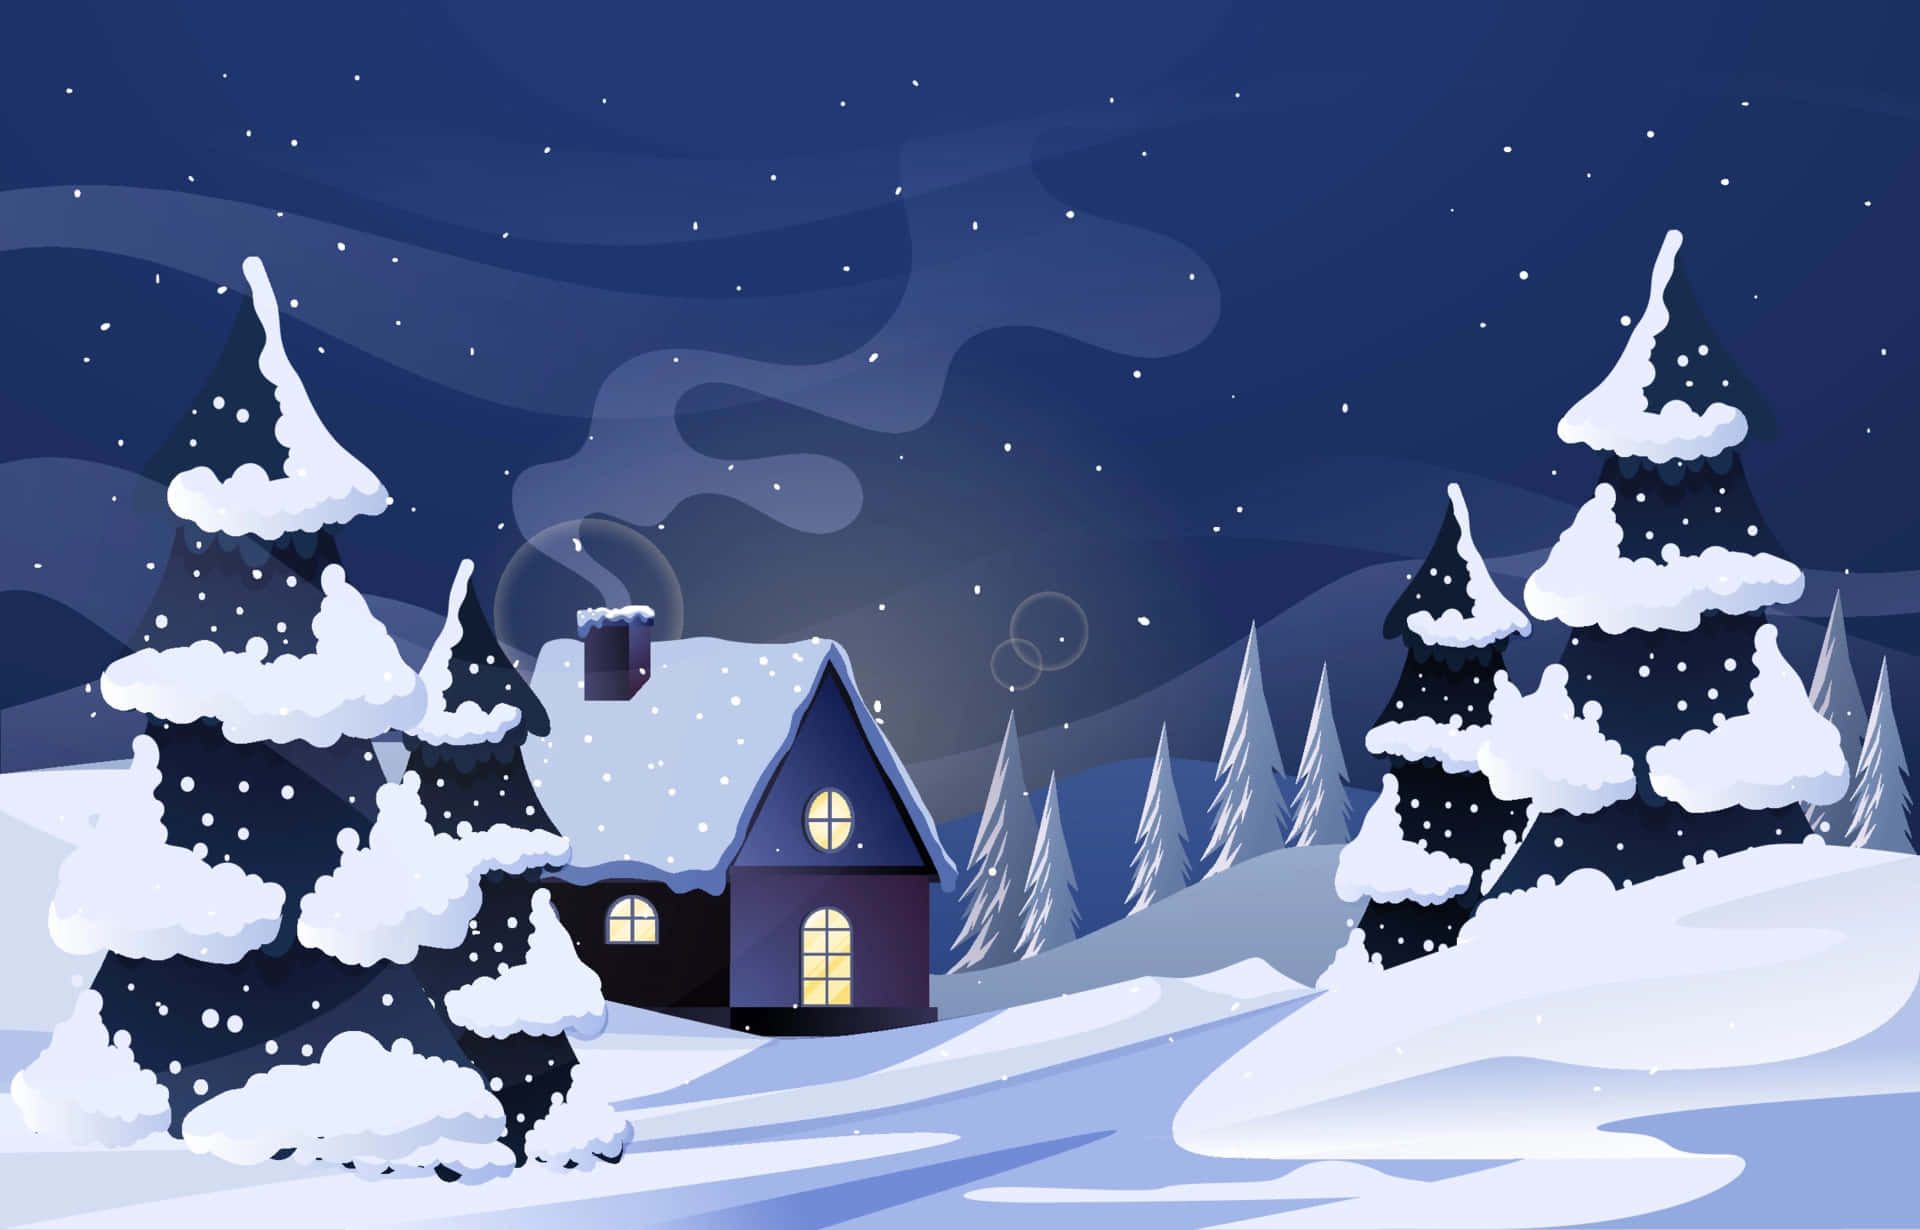 Winter Wonderland Christmas Village Picture